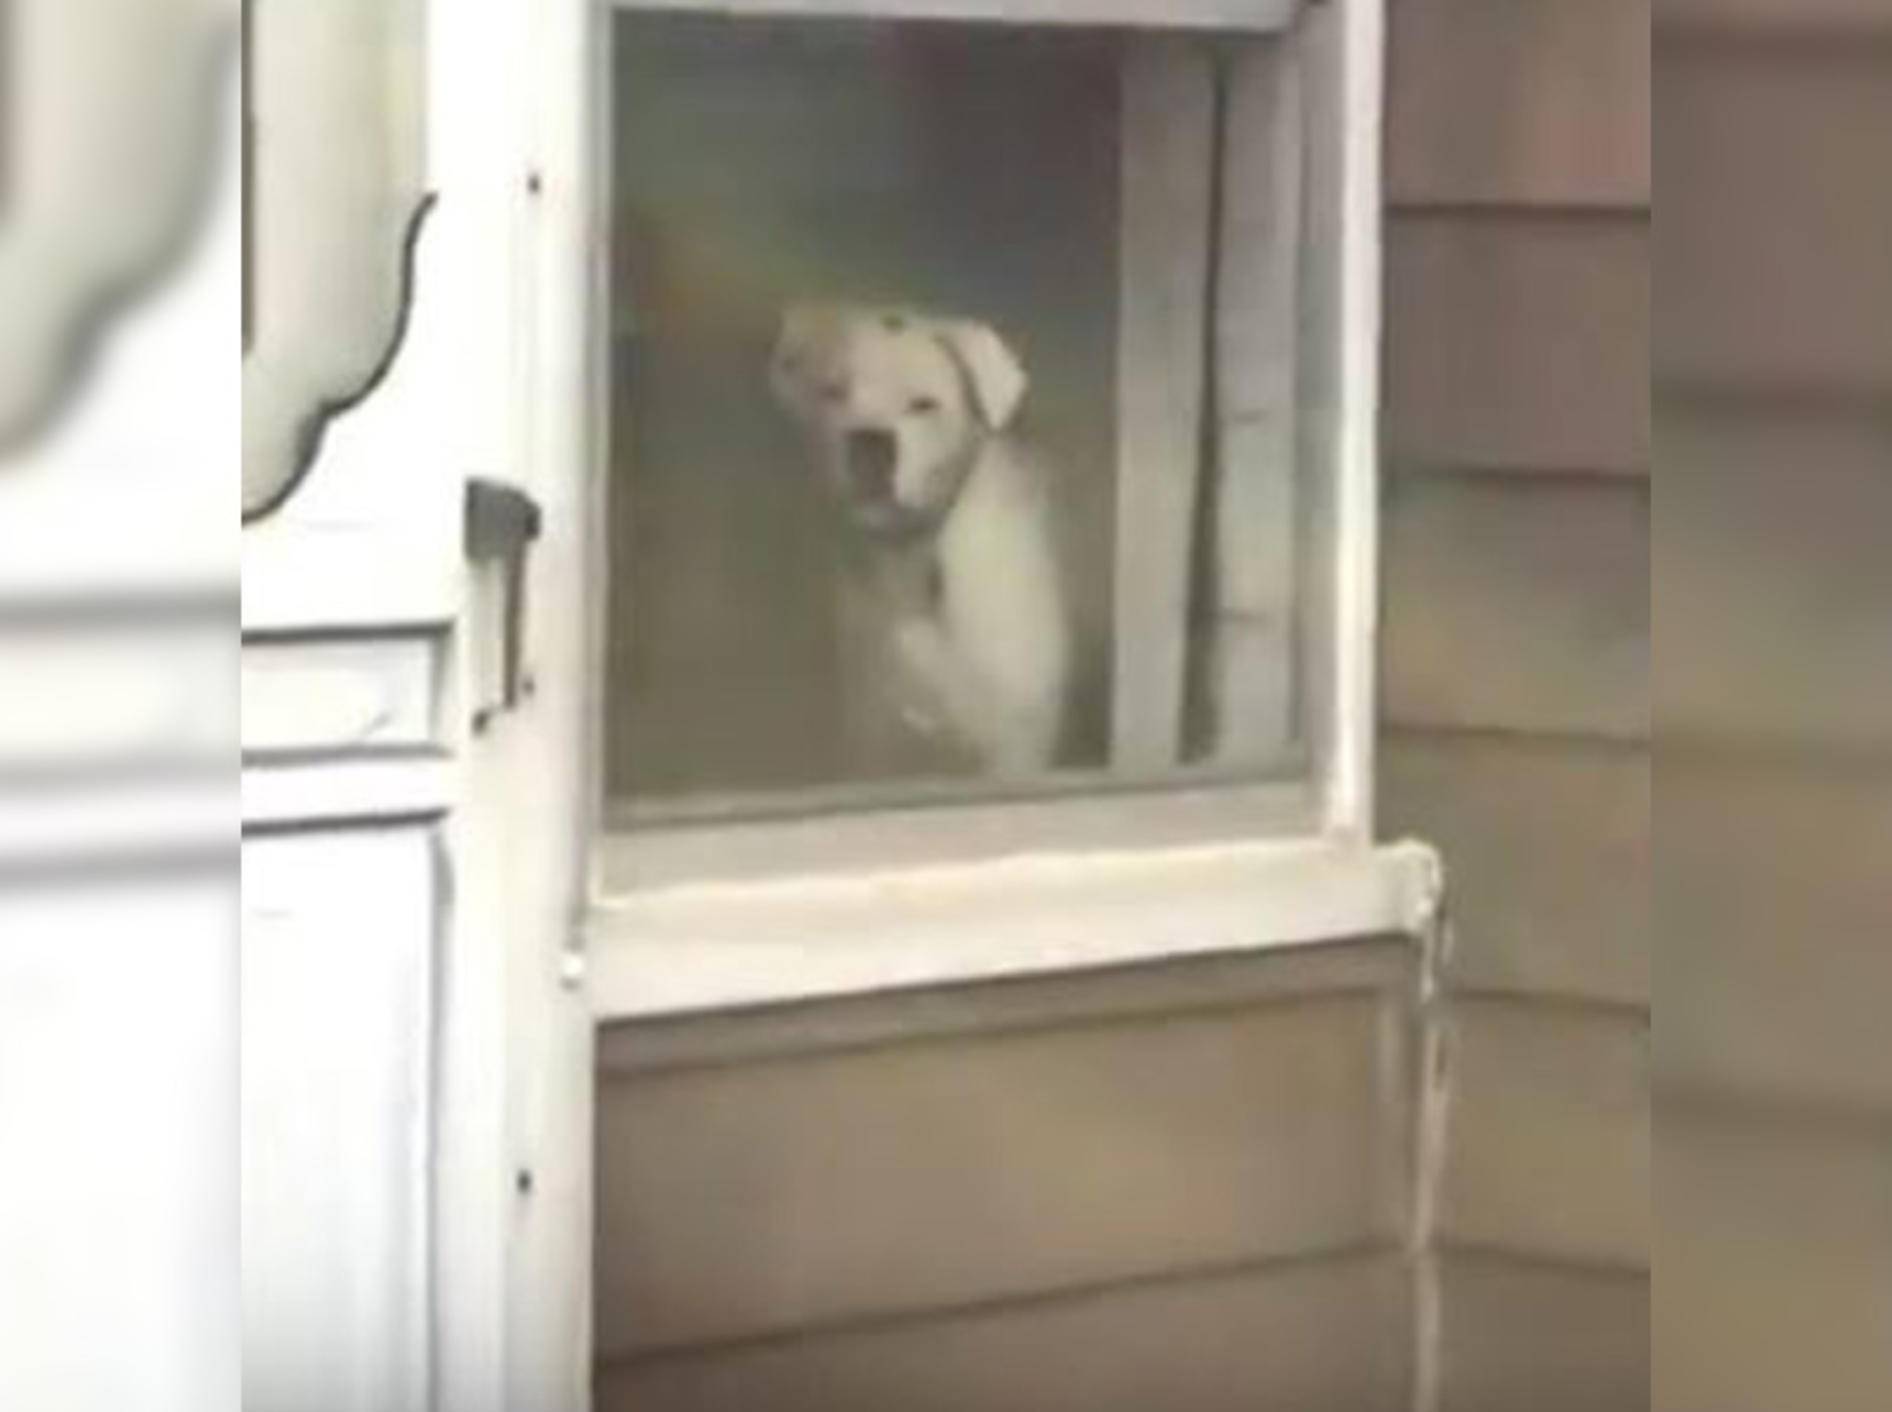 Hündin Maddie beorbachtet ihr Herrchen beim Verlassen des Hauses - Bild: YouTube / ELITE Virals